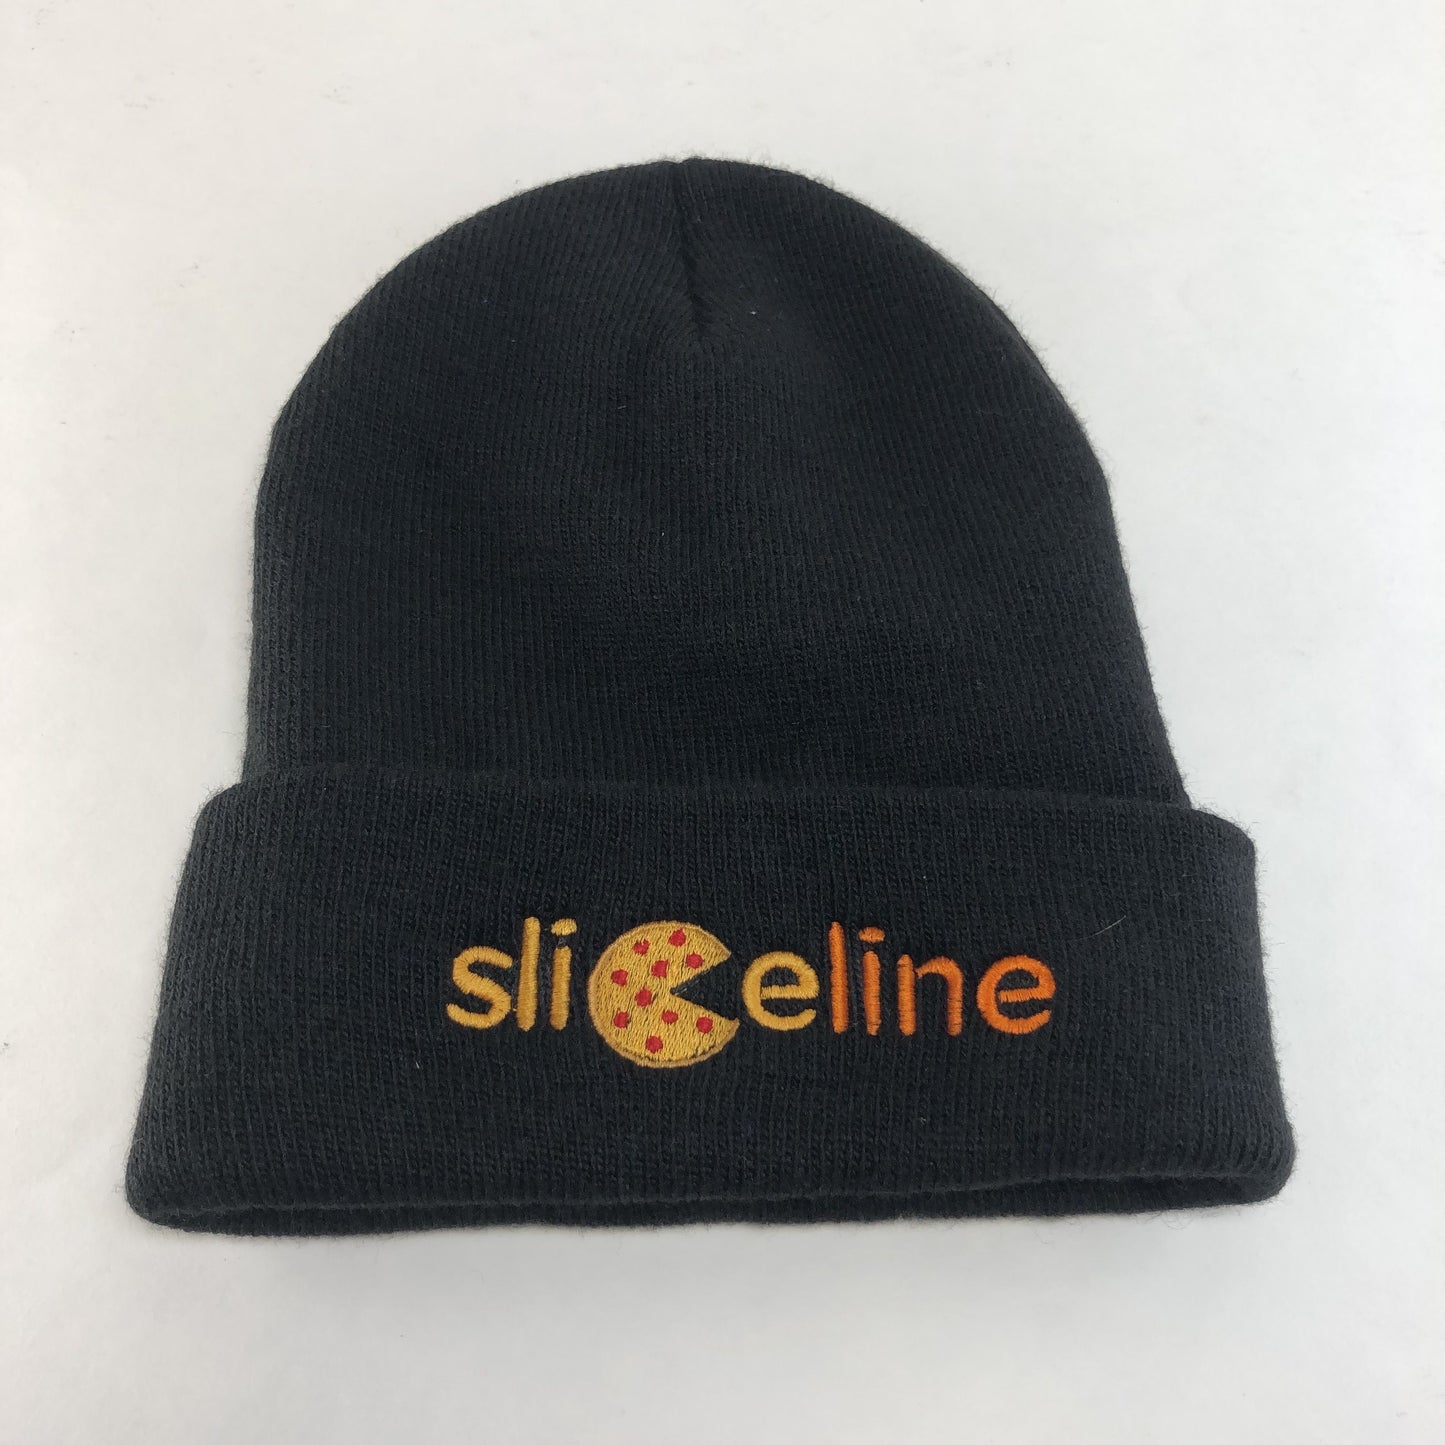 SILICON VALLEY: Sliceline Black Beanie